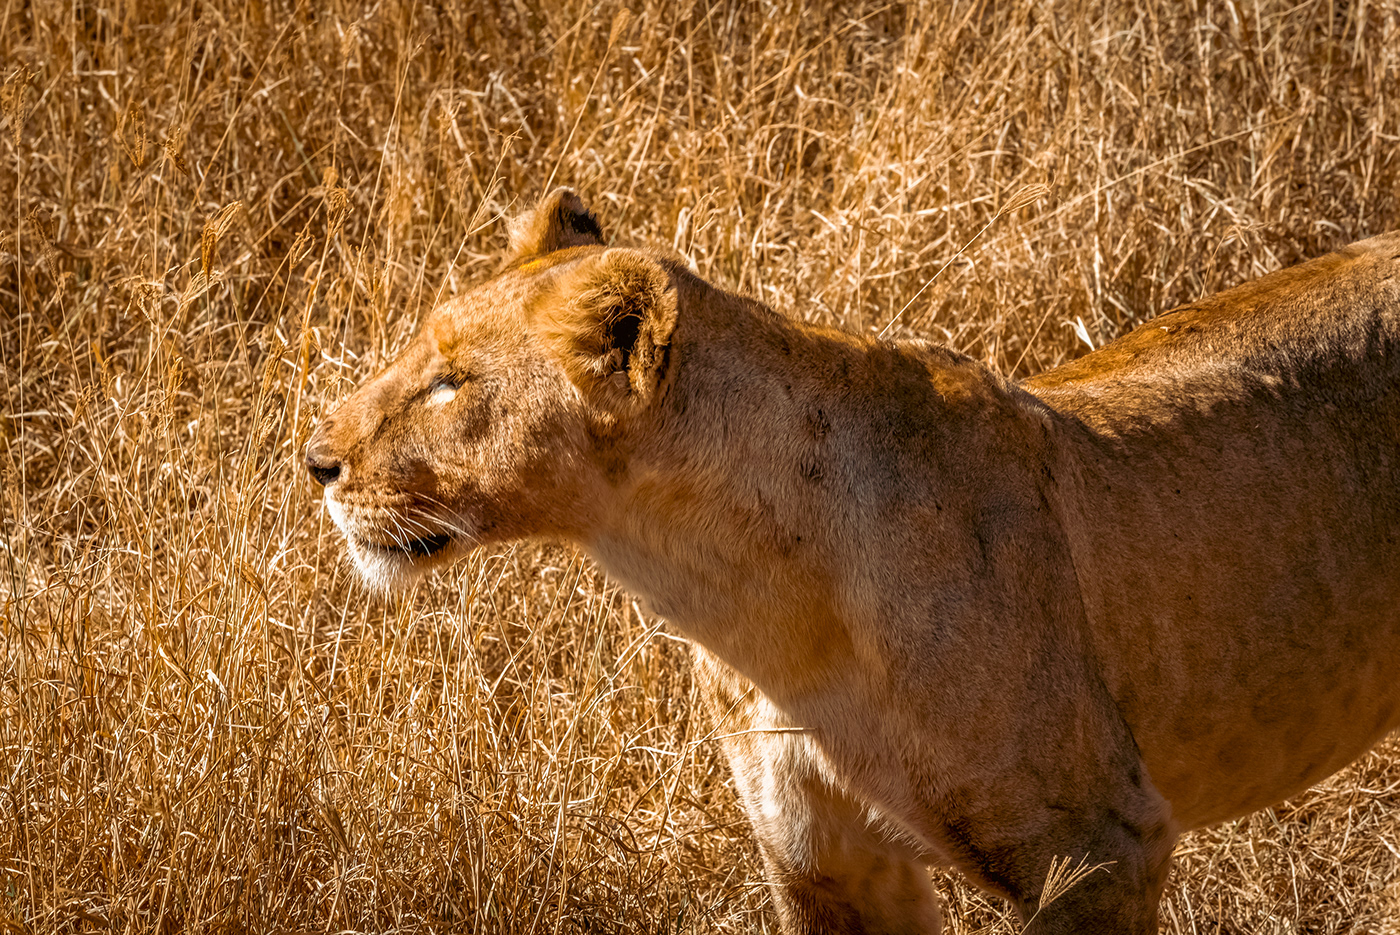 Ngorongoro Tanzania africa Nature Lions wildlife animals Landscape Travel Photography 